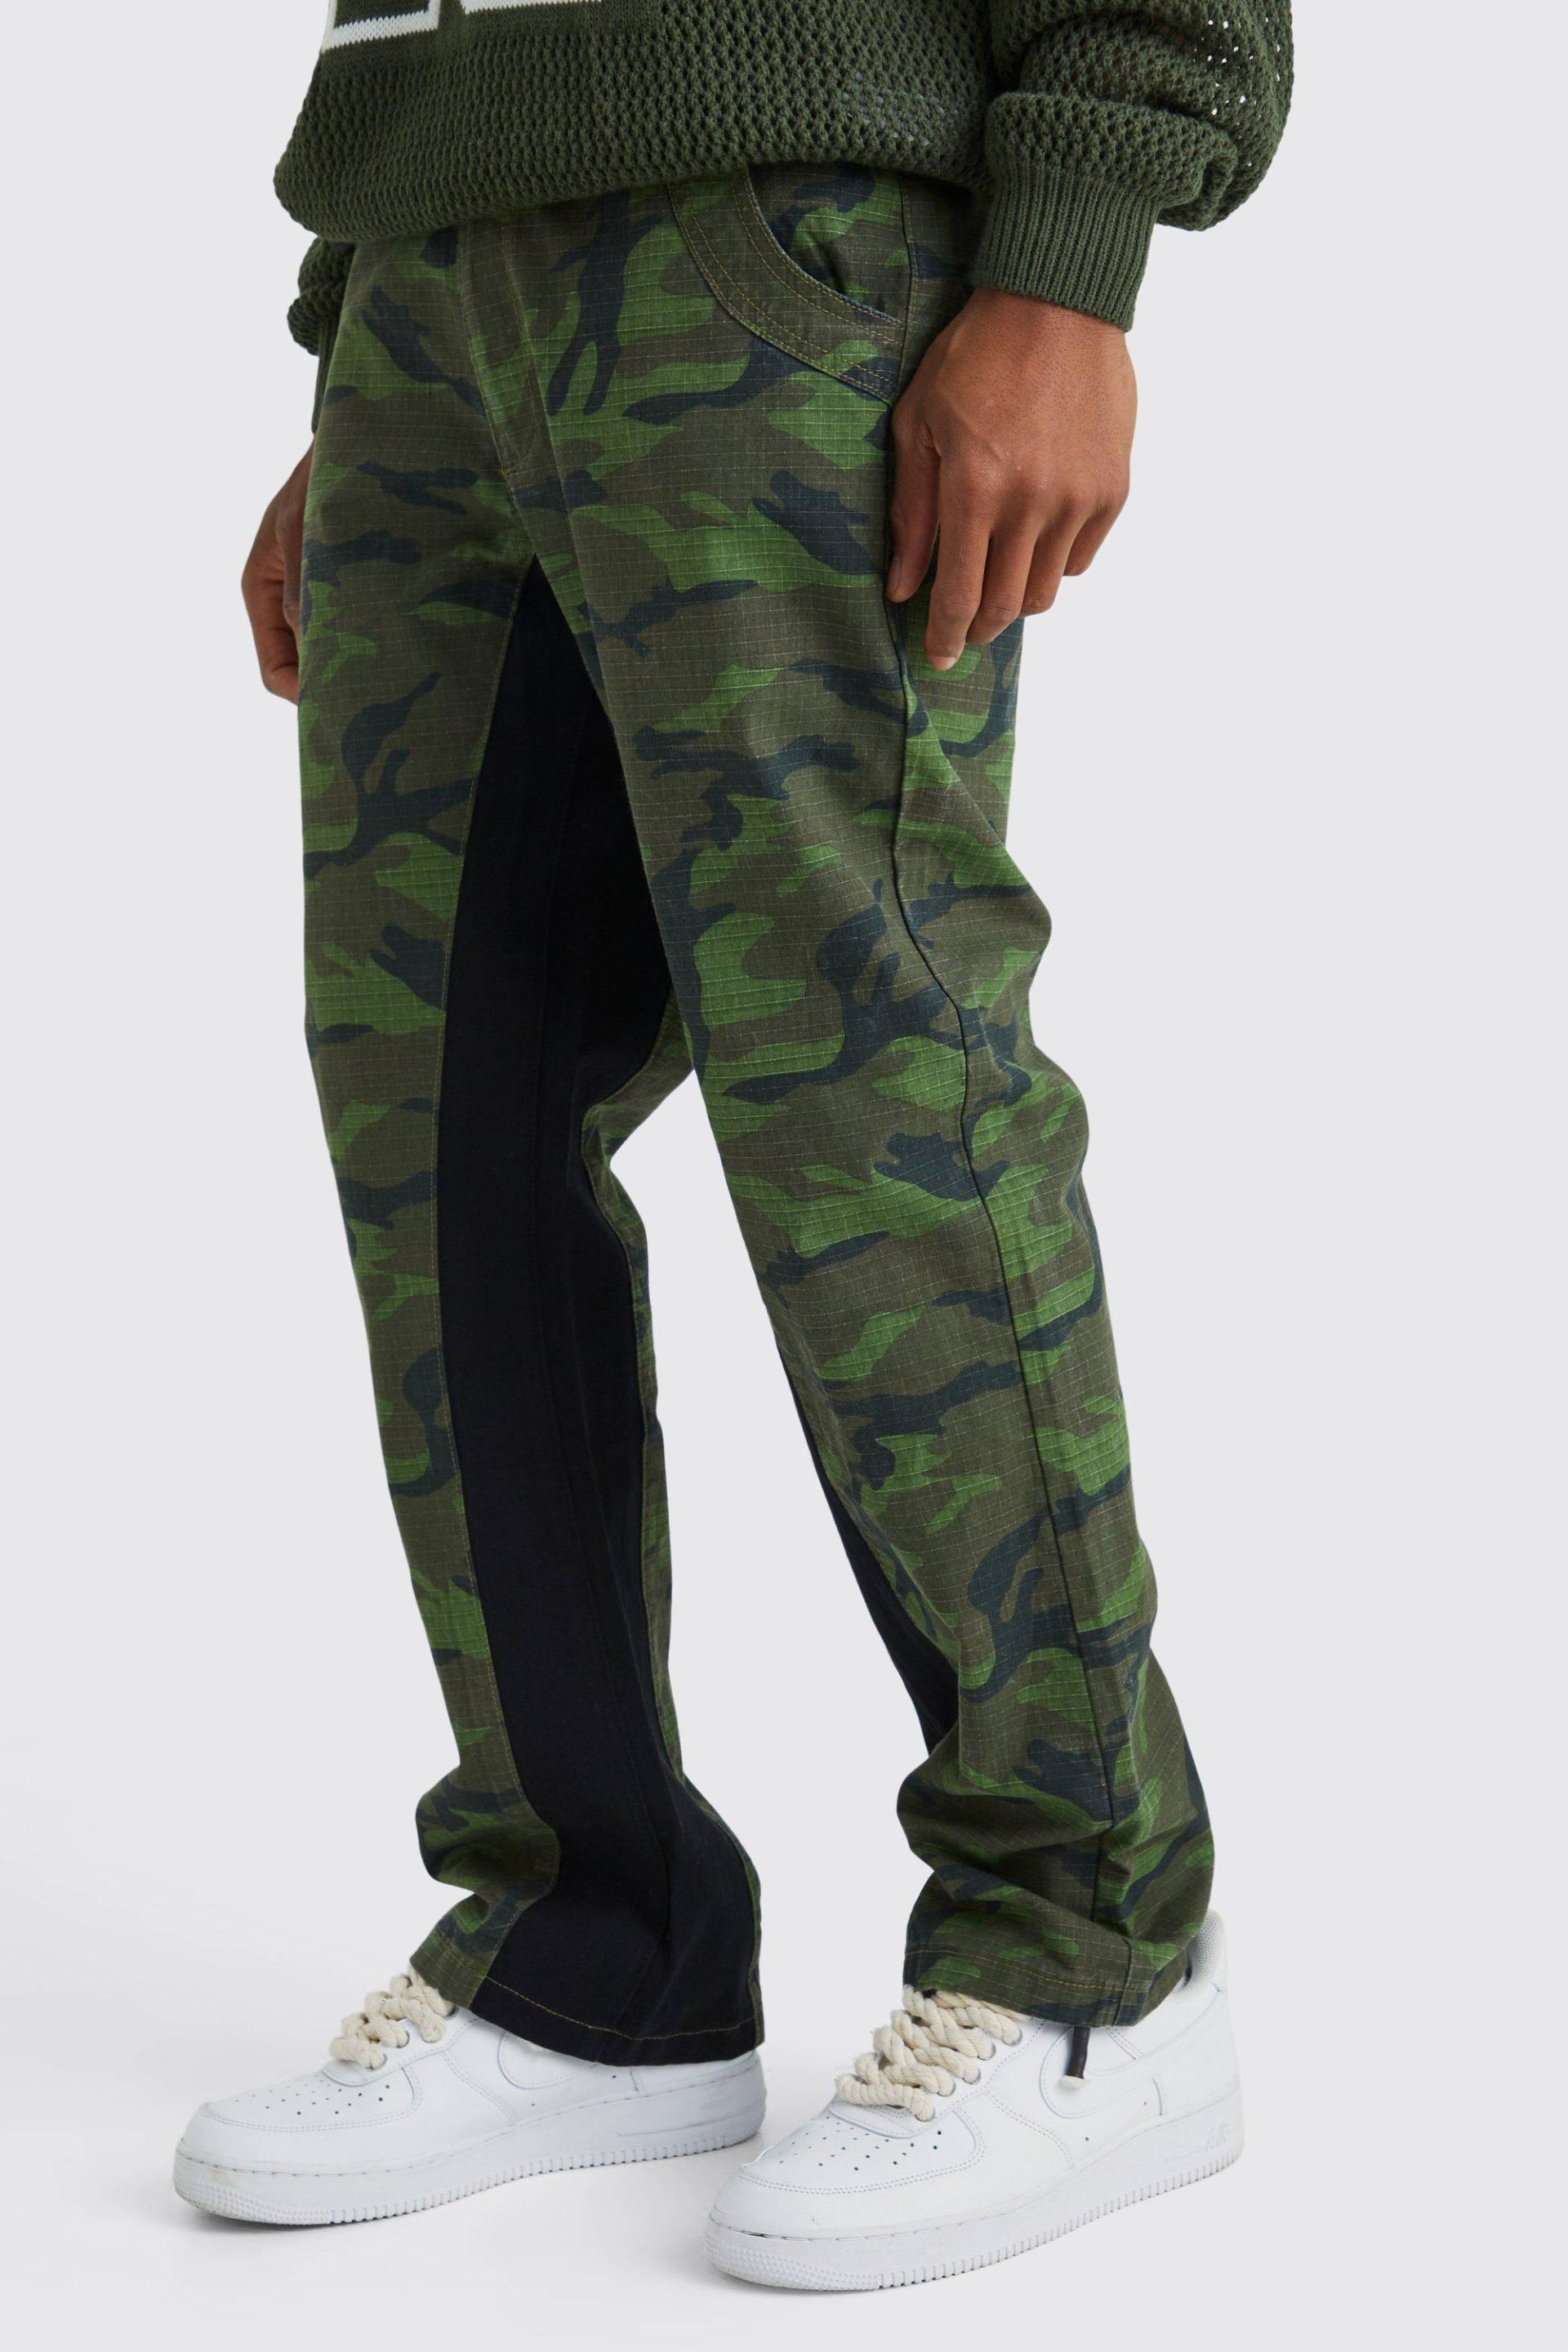 Colorblock Camouflage Hose Mit Geradem Bein - Khaki - 30, Khaki von boohoo